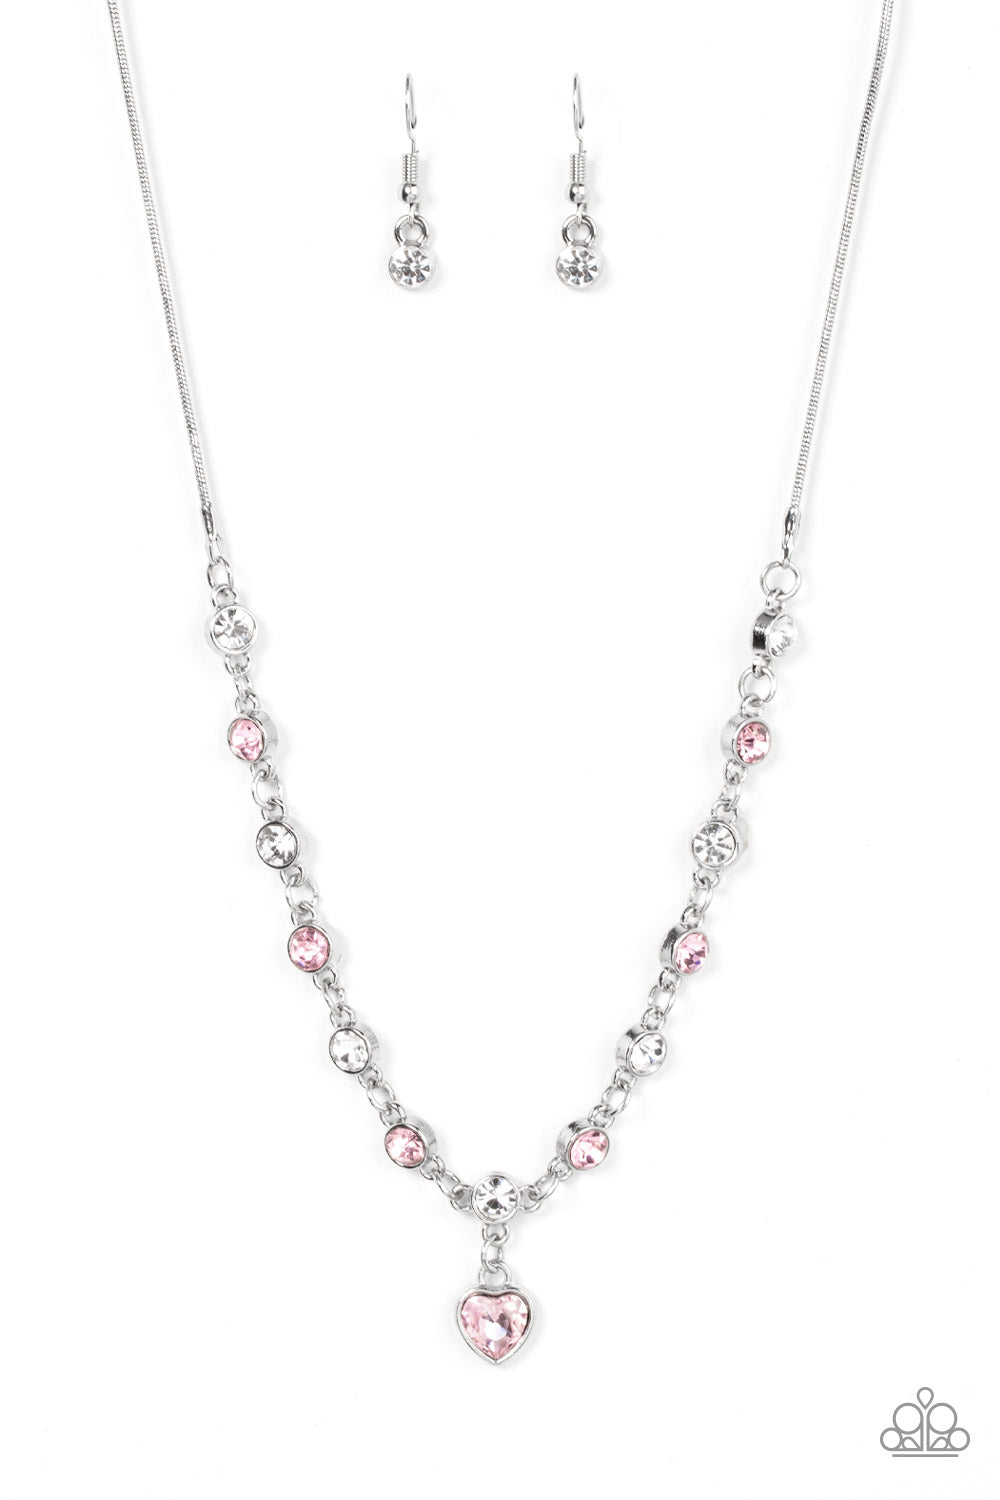 True Love Trinket Necklace (White, Pink, Gold)